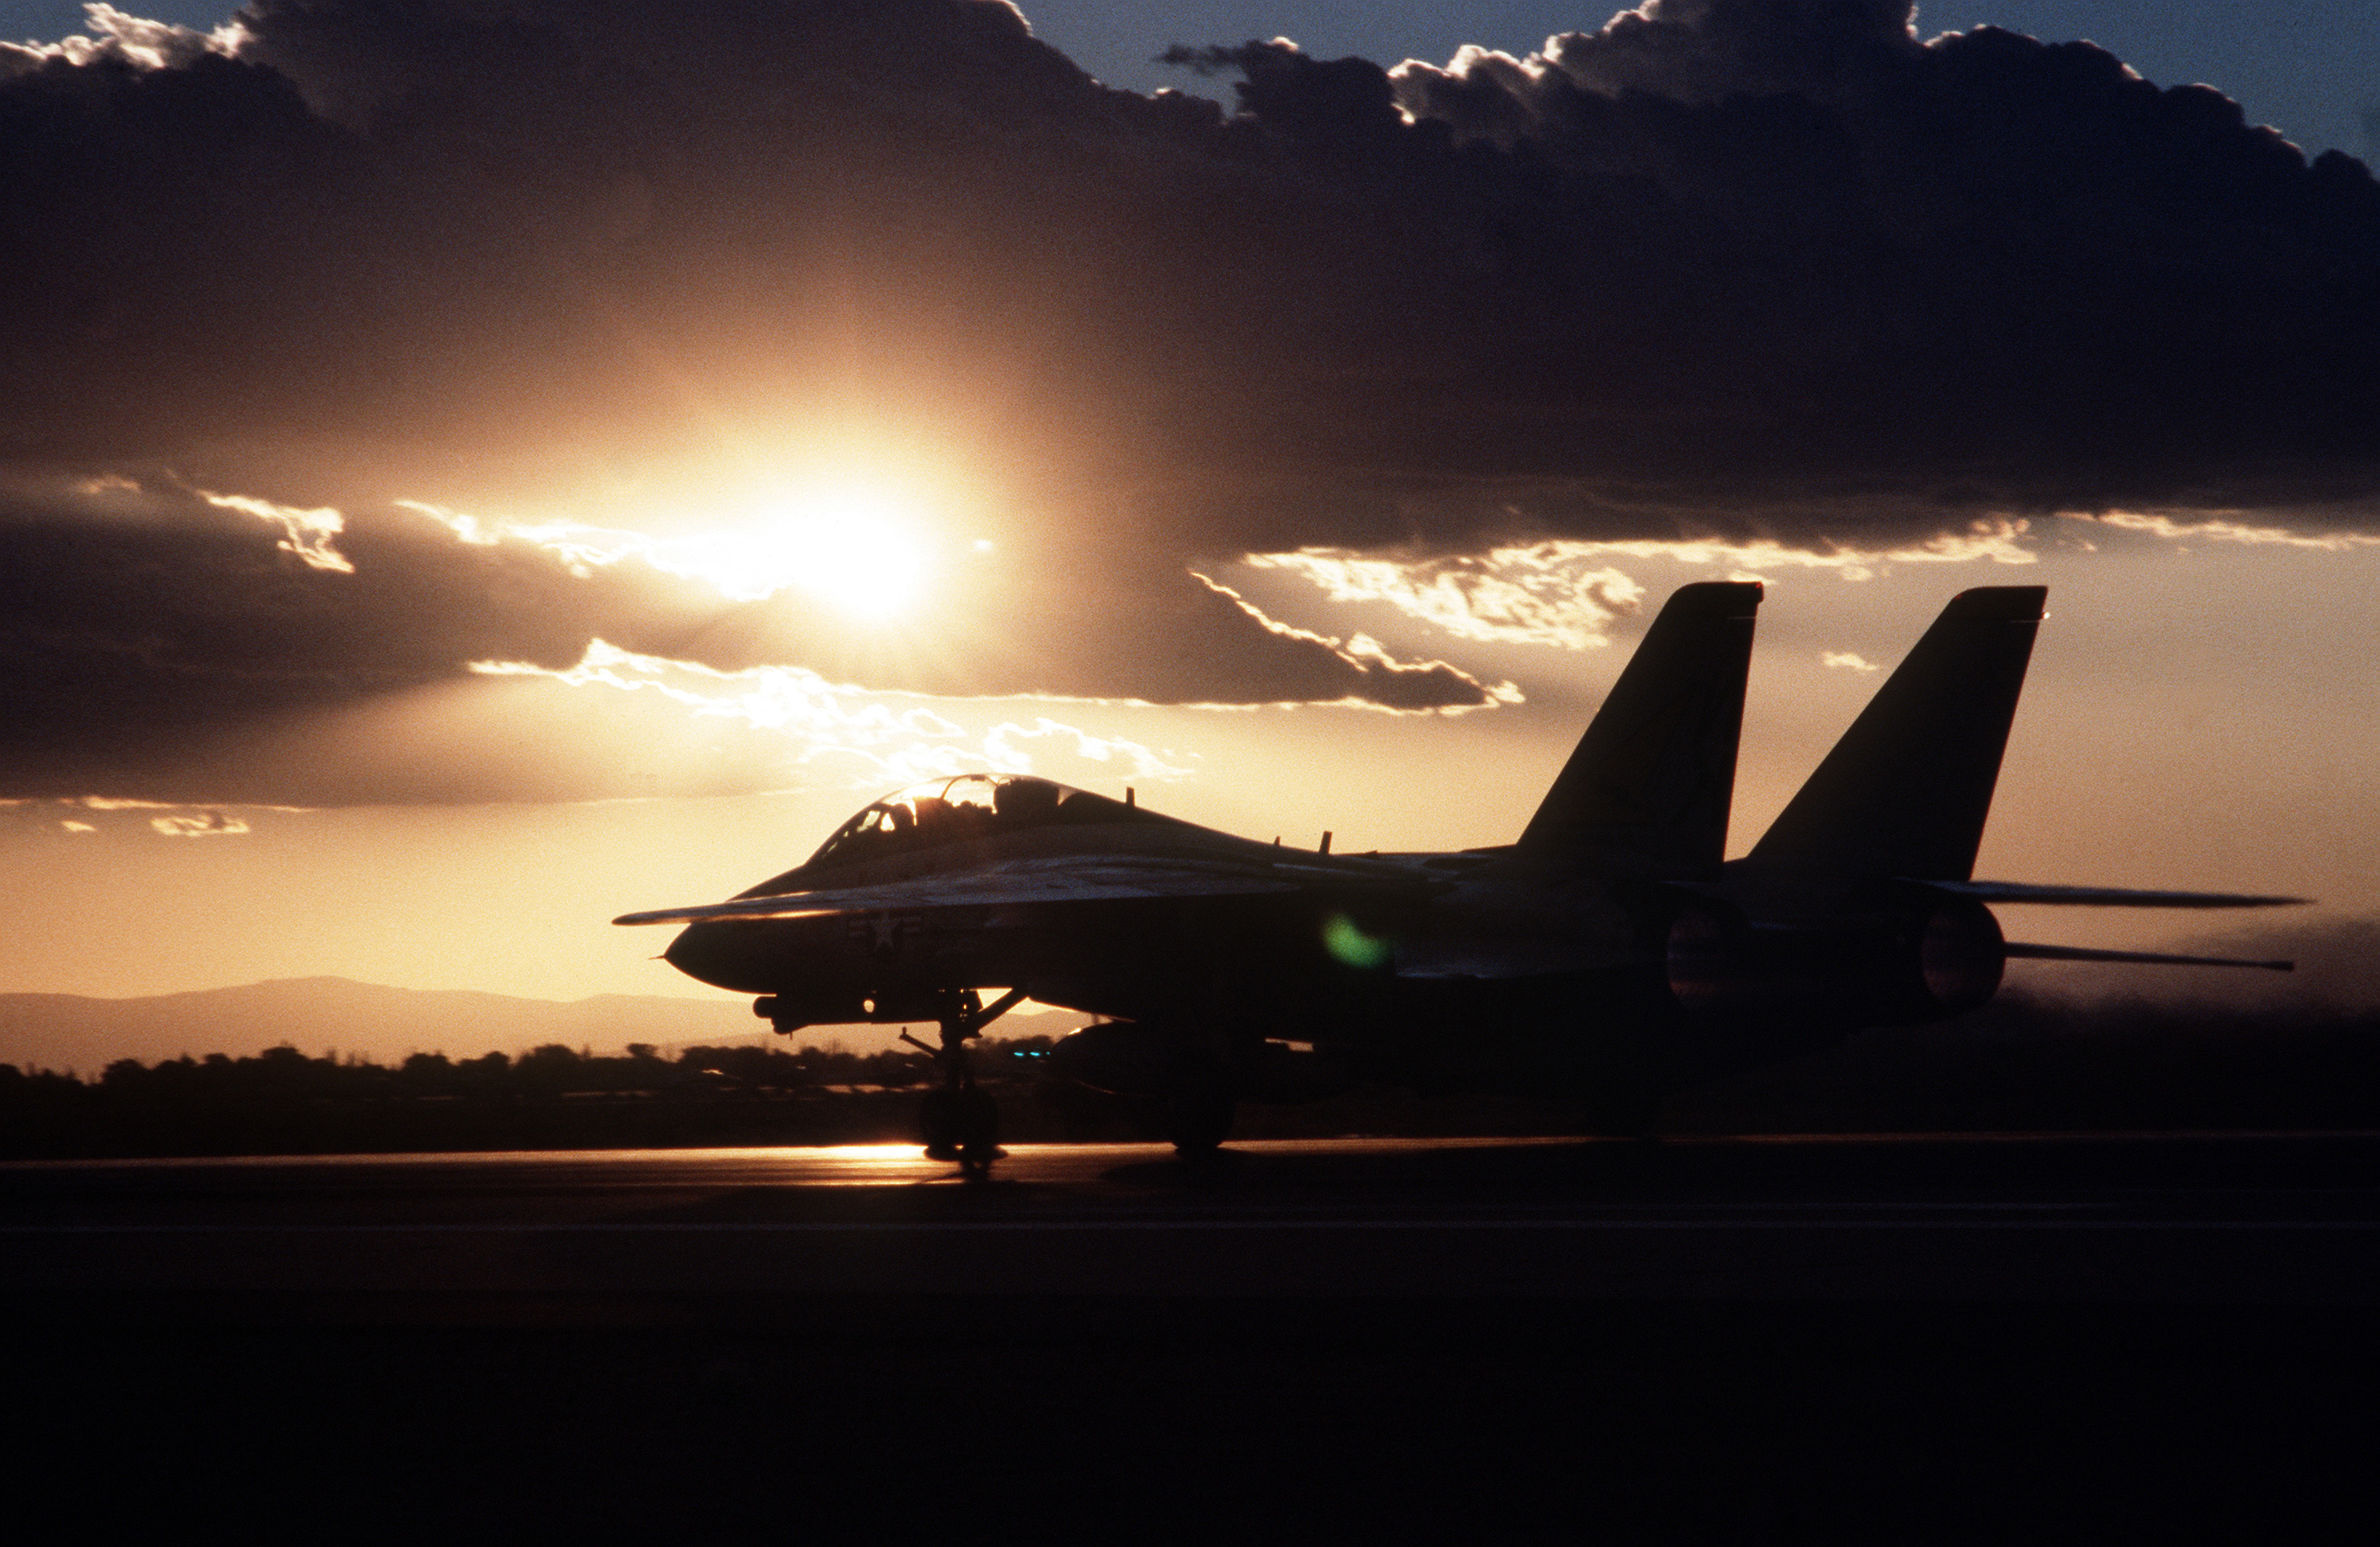 フリー画像 航空機 飛行機 軍用機 戦闘機 F 14 トムキャット F 14tomcat 夕日 夕焼け 夕暮れ フリー素材 画像素材なら 無料 フリー写真素材のフリーフォト